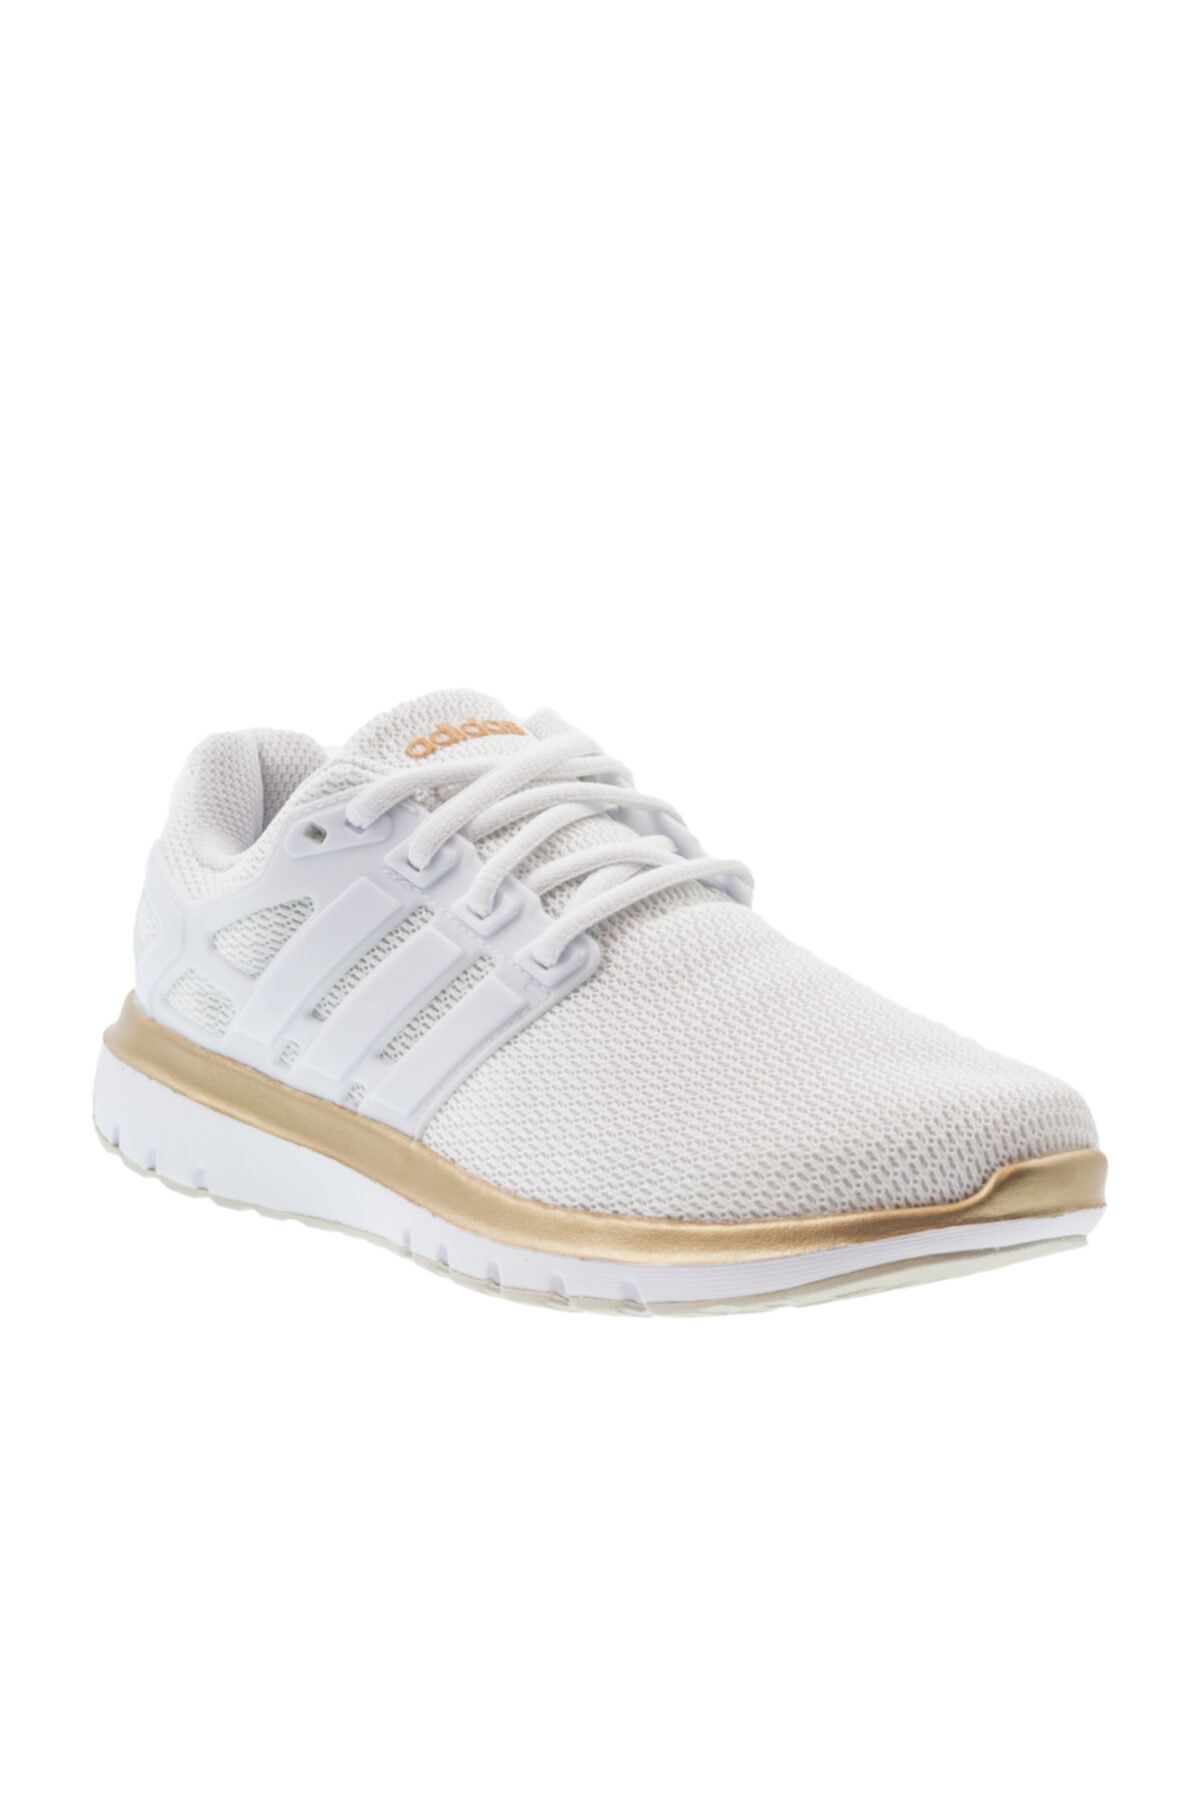 adidas Energy Cloud V Beyaz Beyaz Dore Kadın Koşu Ayakkabısı 100409037